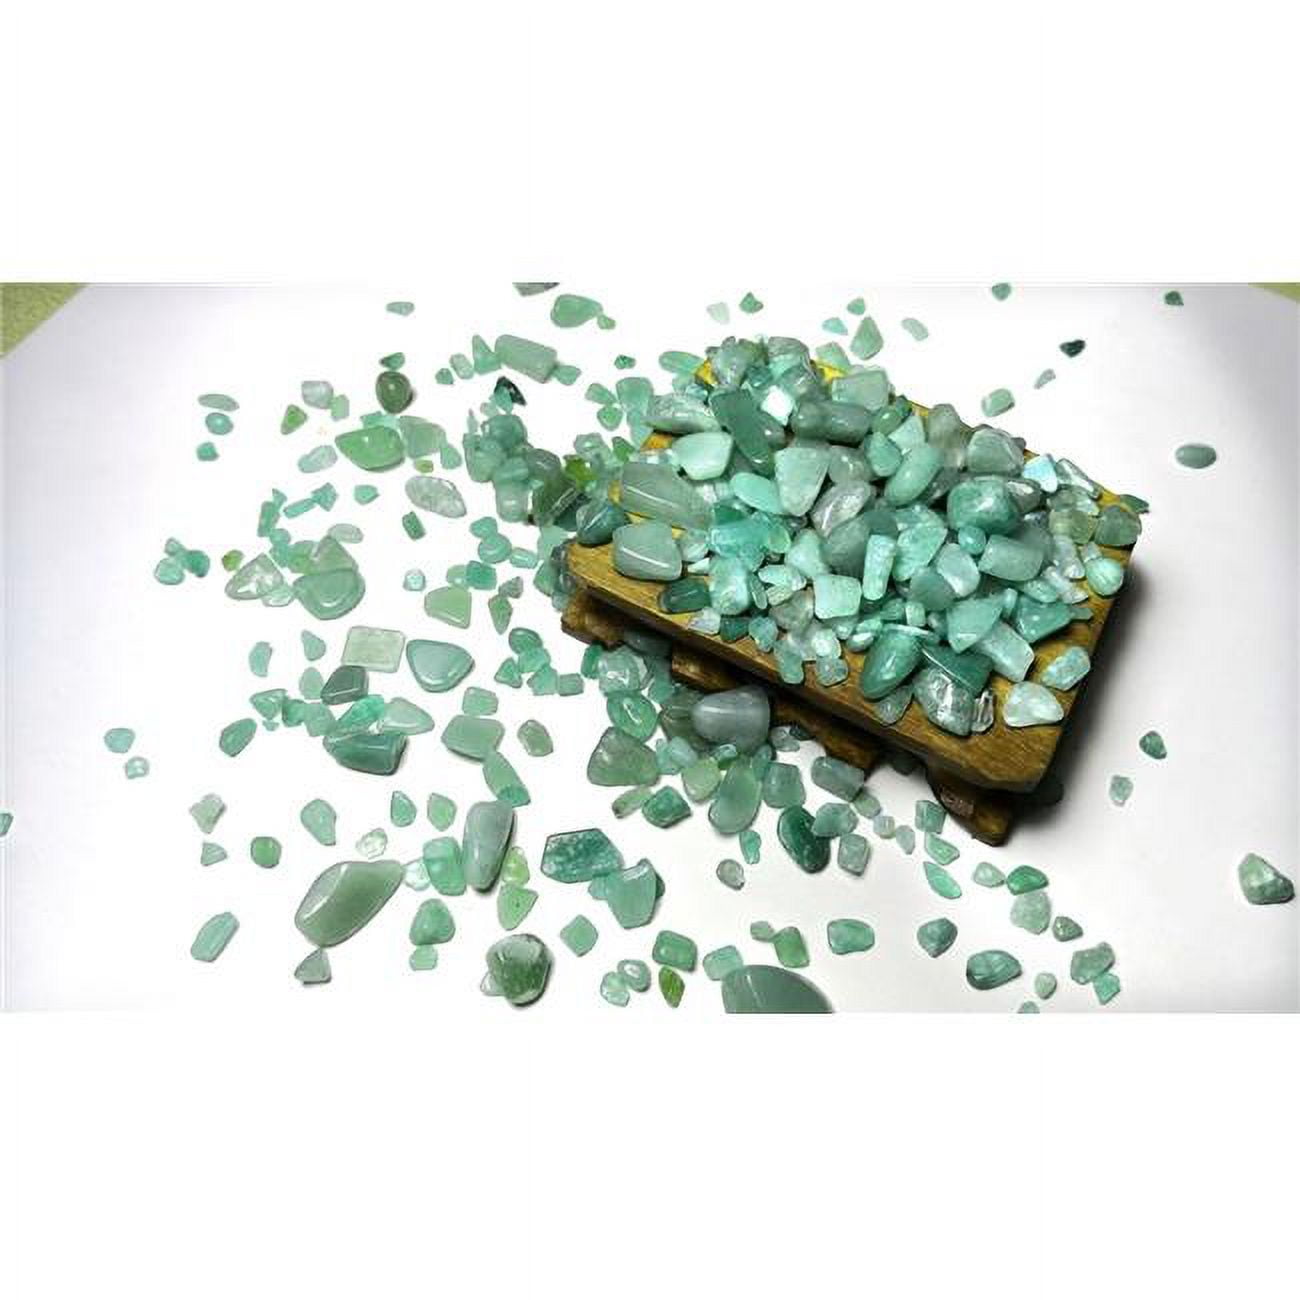 Rk460g 1 Lbs Green Aveturine Tumbled Chips Stone